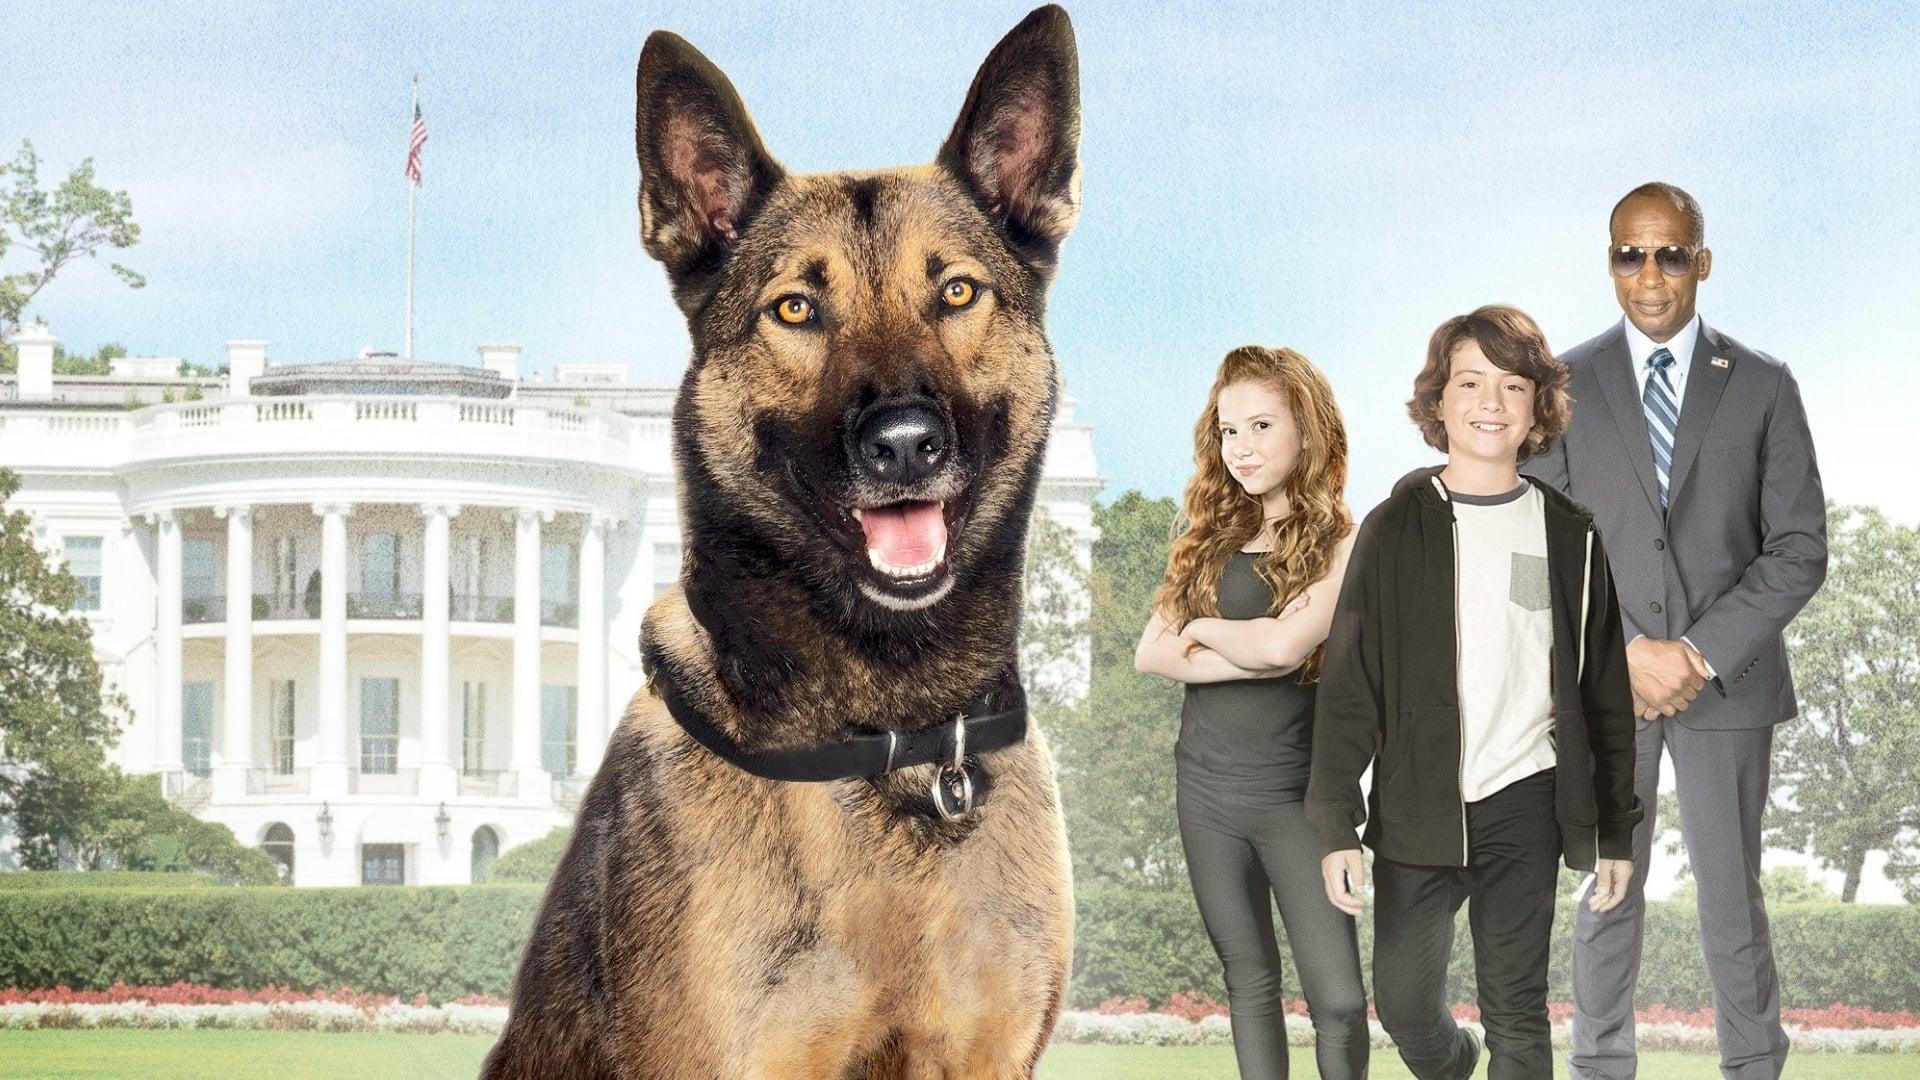 دانلود فیلم Max 2: White House Hero 2017